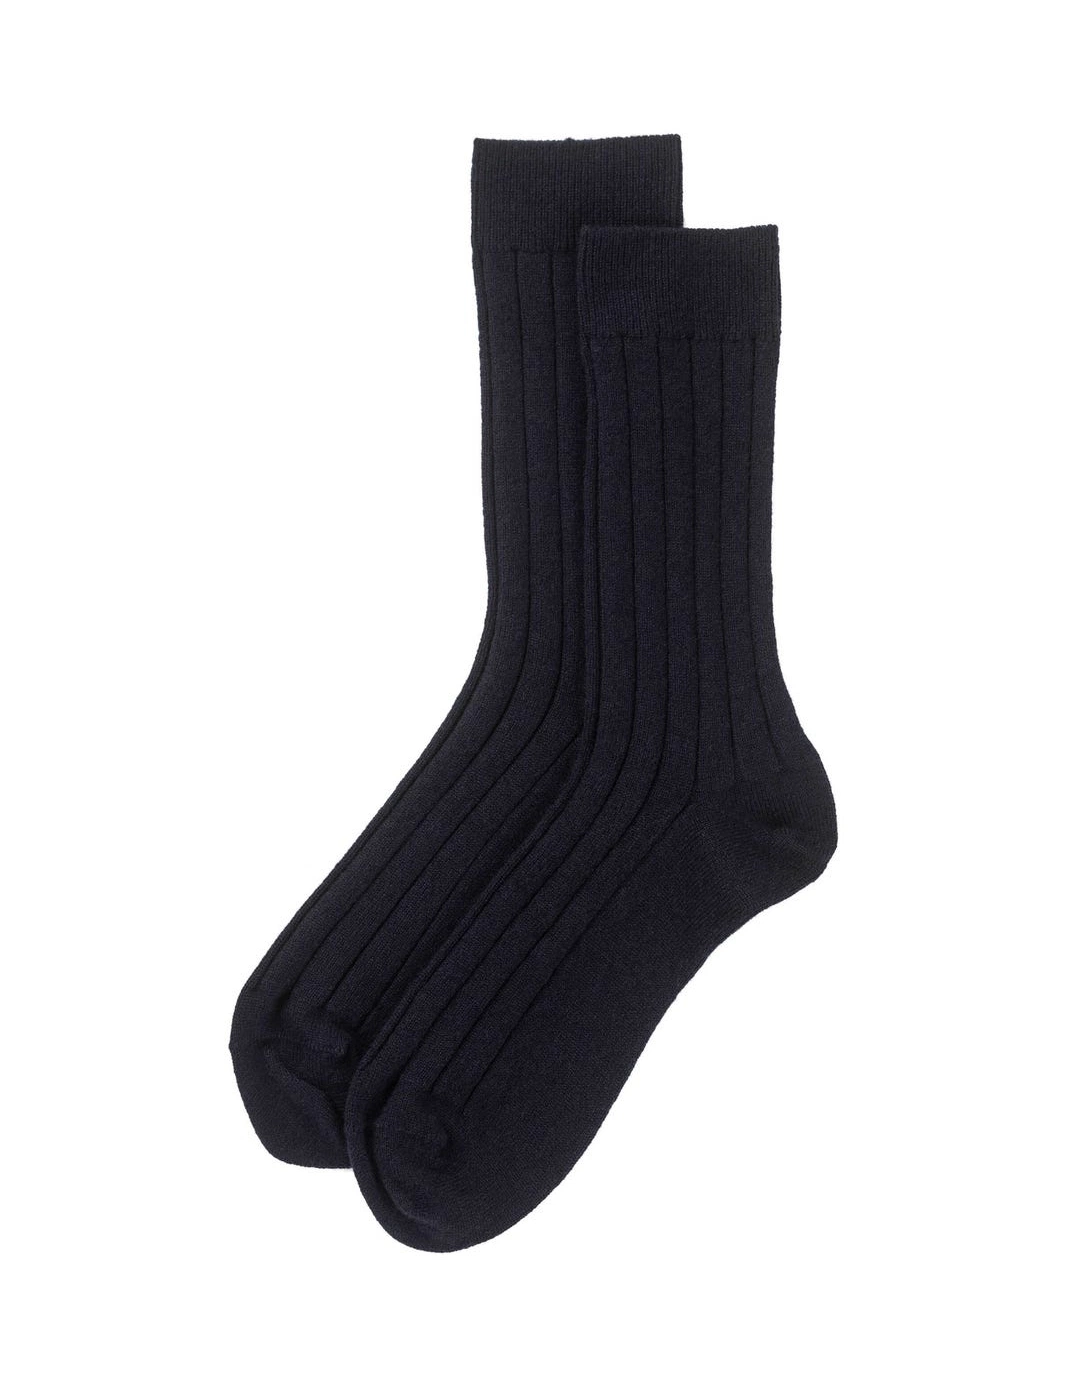 Men&prime; S 100% Cashmere Rib Socks Apparel Accessories